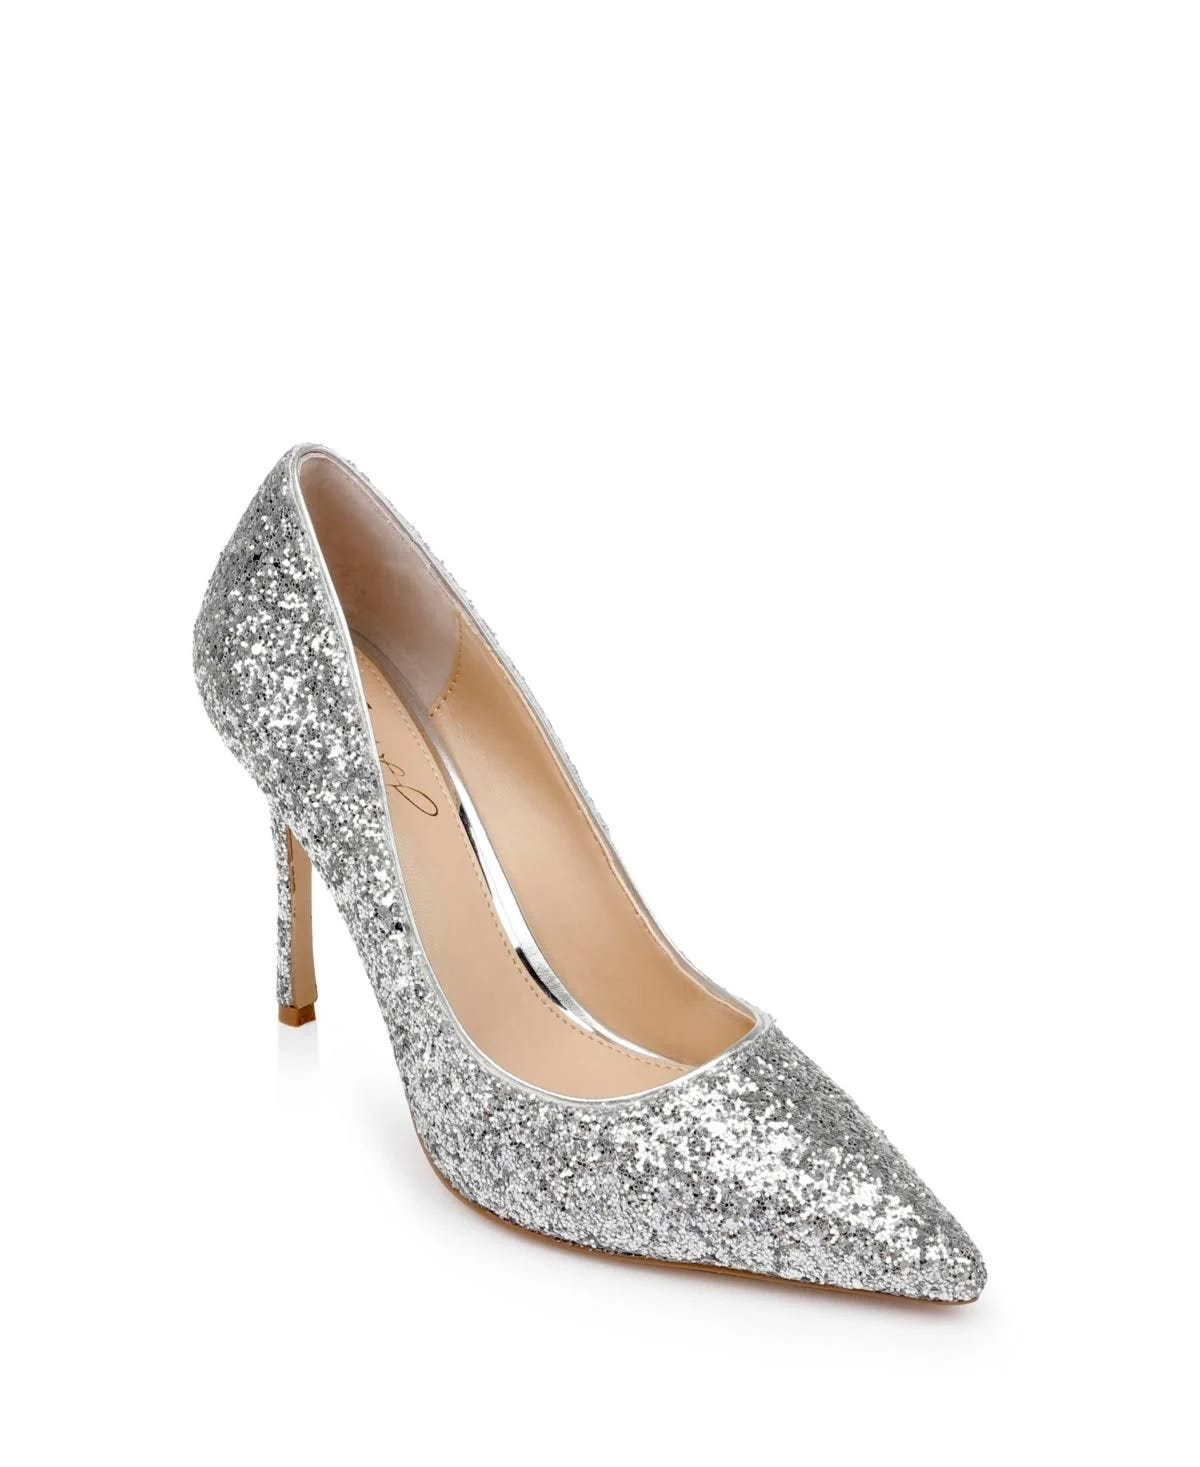 Glamorous Silver Pointed Toe Stilettos | Image